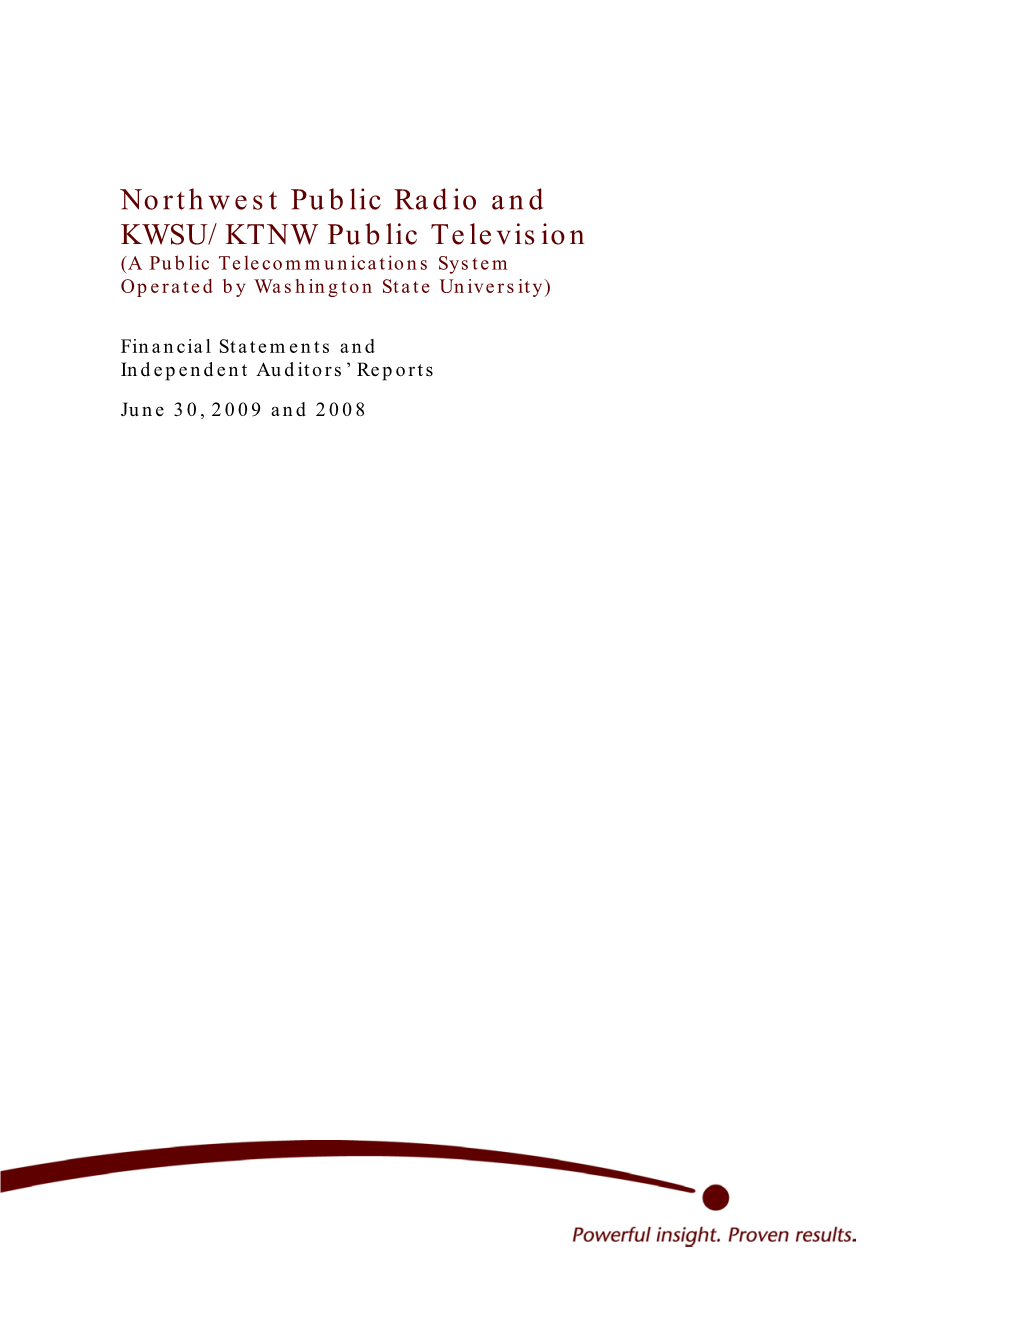 Northwest Public Radio and KWSU/KTNW Public Television (A Public Telecommunications System Operated by Washington State University)